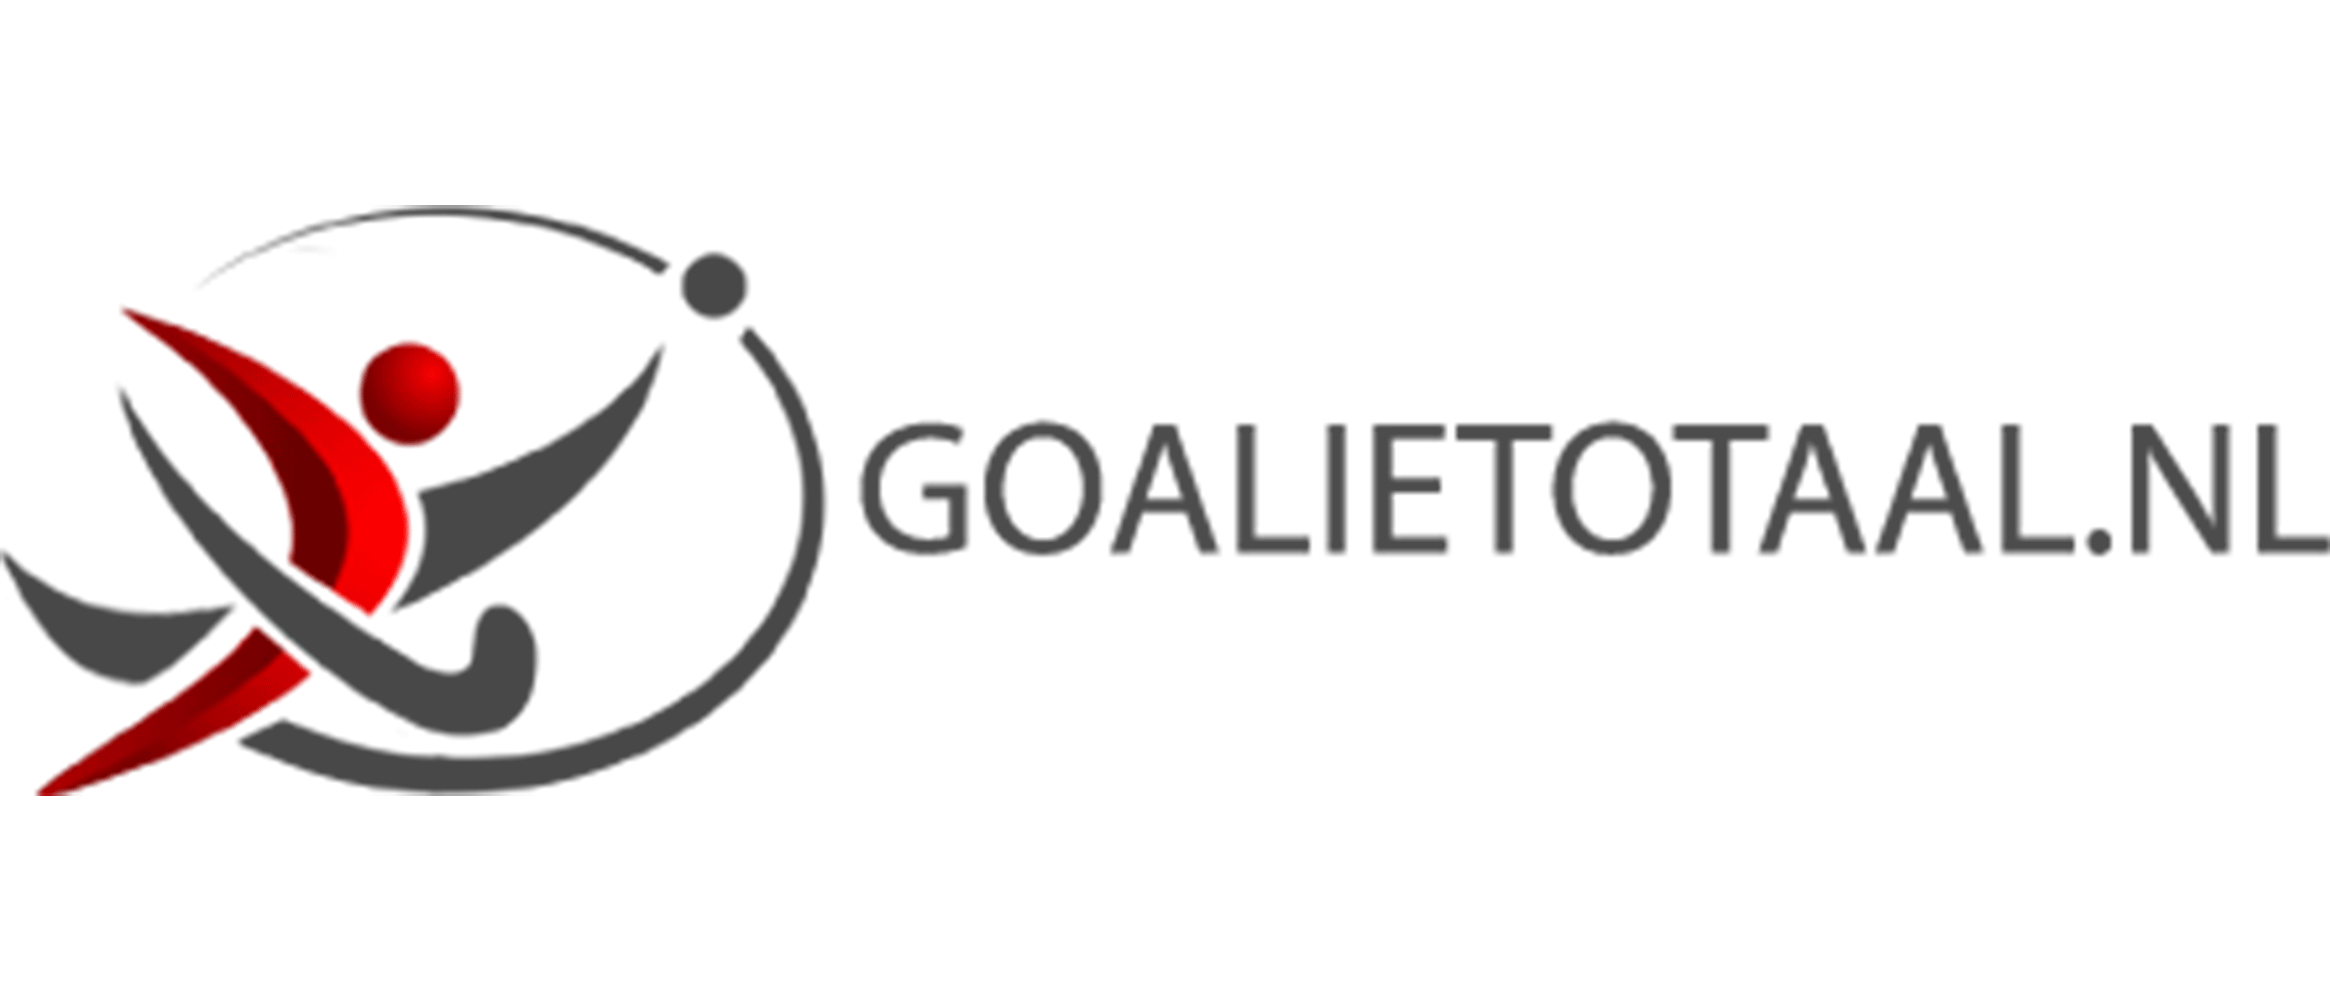 Goalietotaal.nl